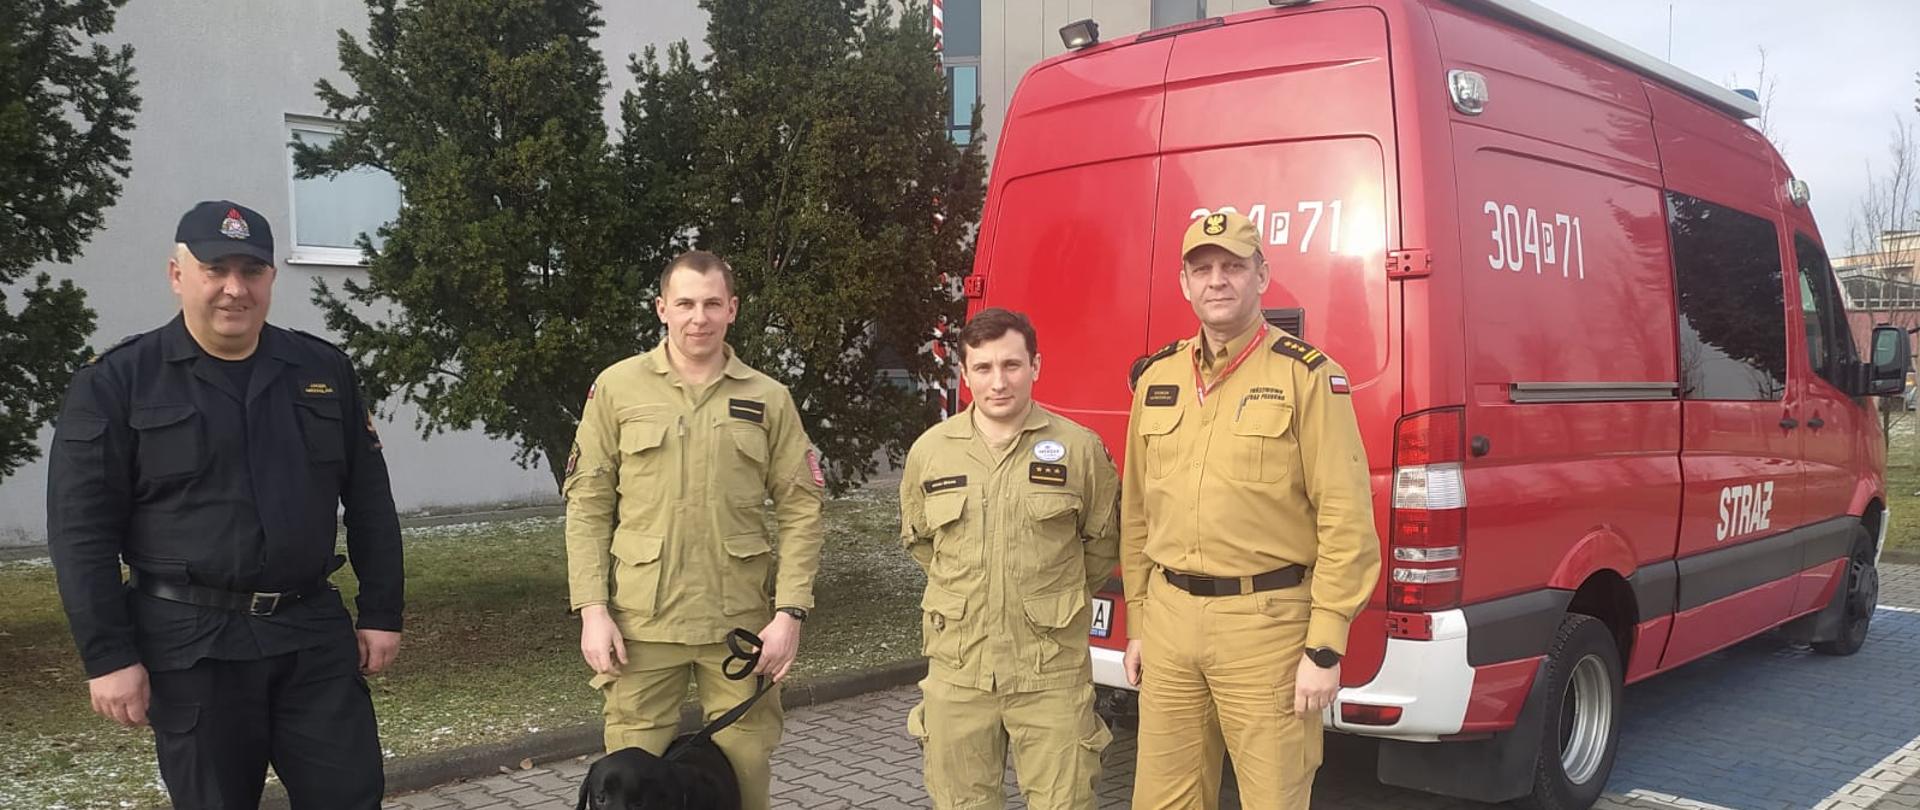 Poznańscy komendanci żegnający strażaków biorących udział w poszukiwaniach osób zaginionych na terenie Turcji